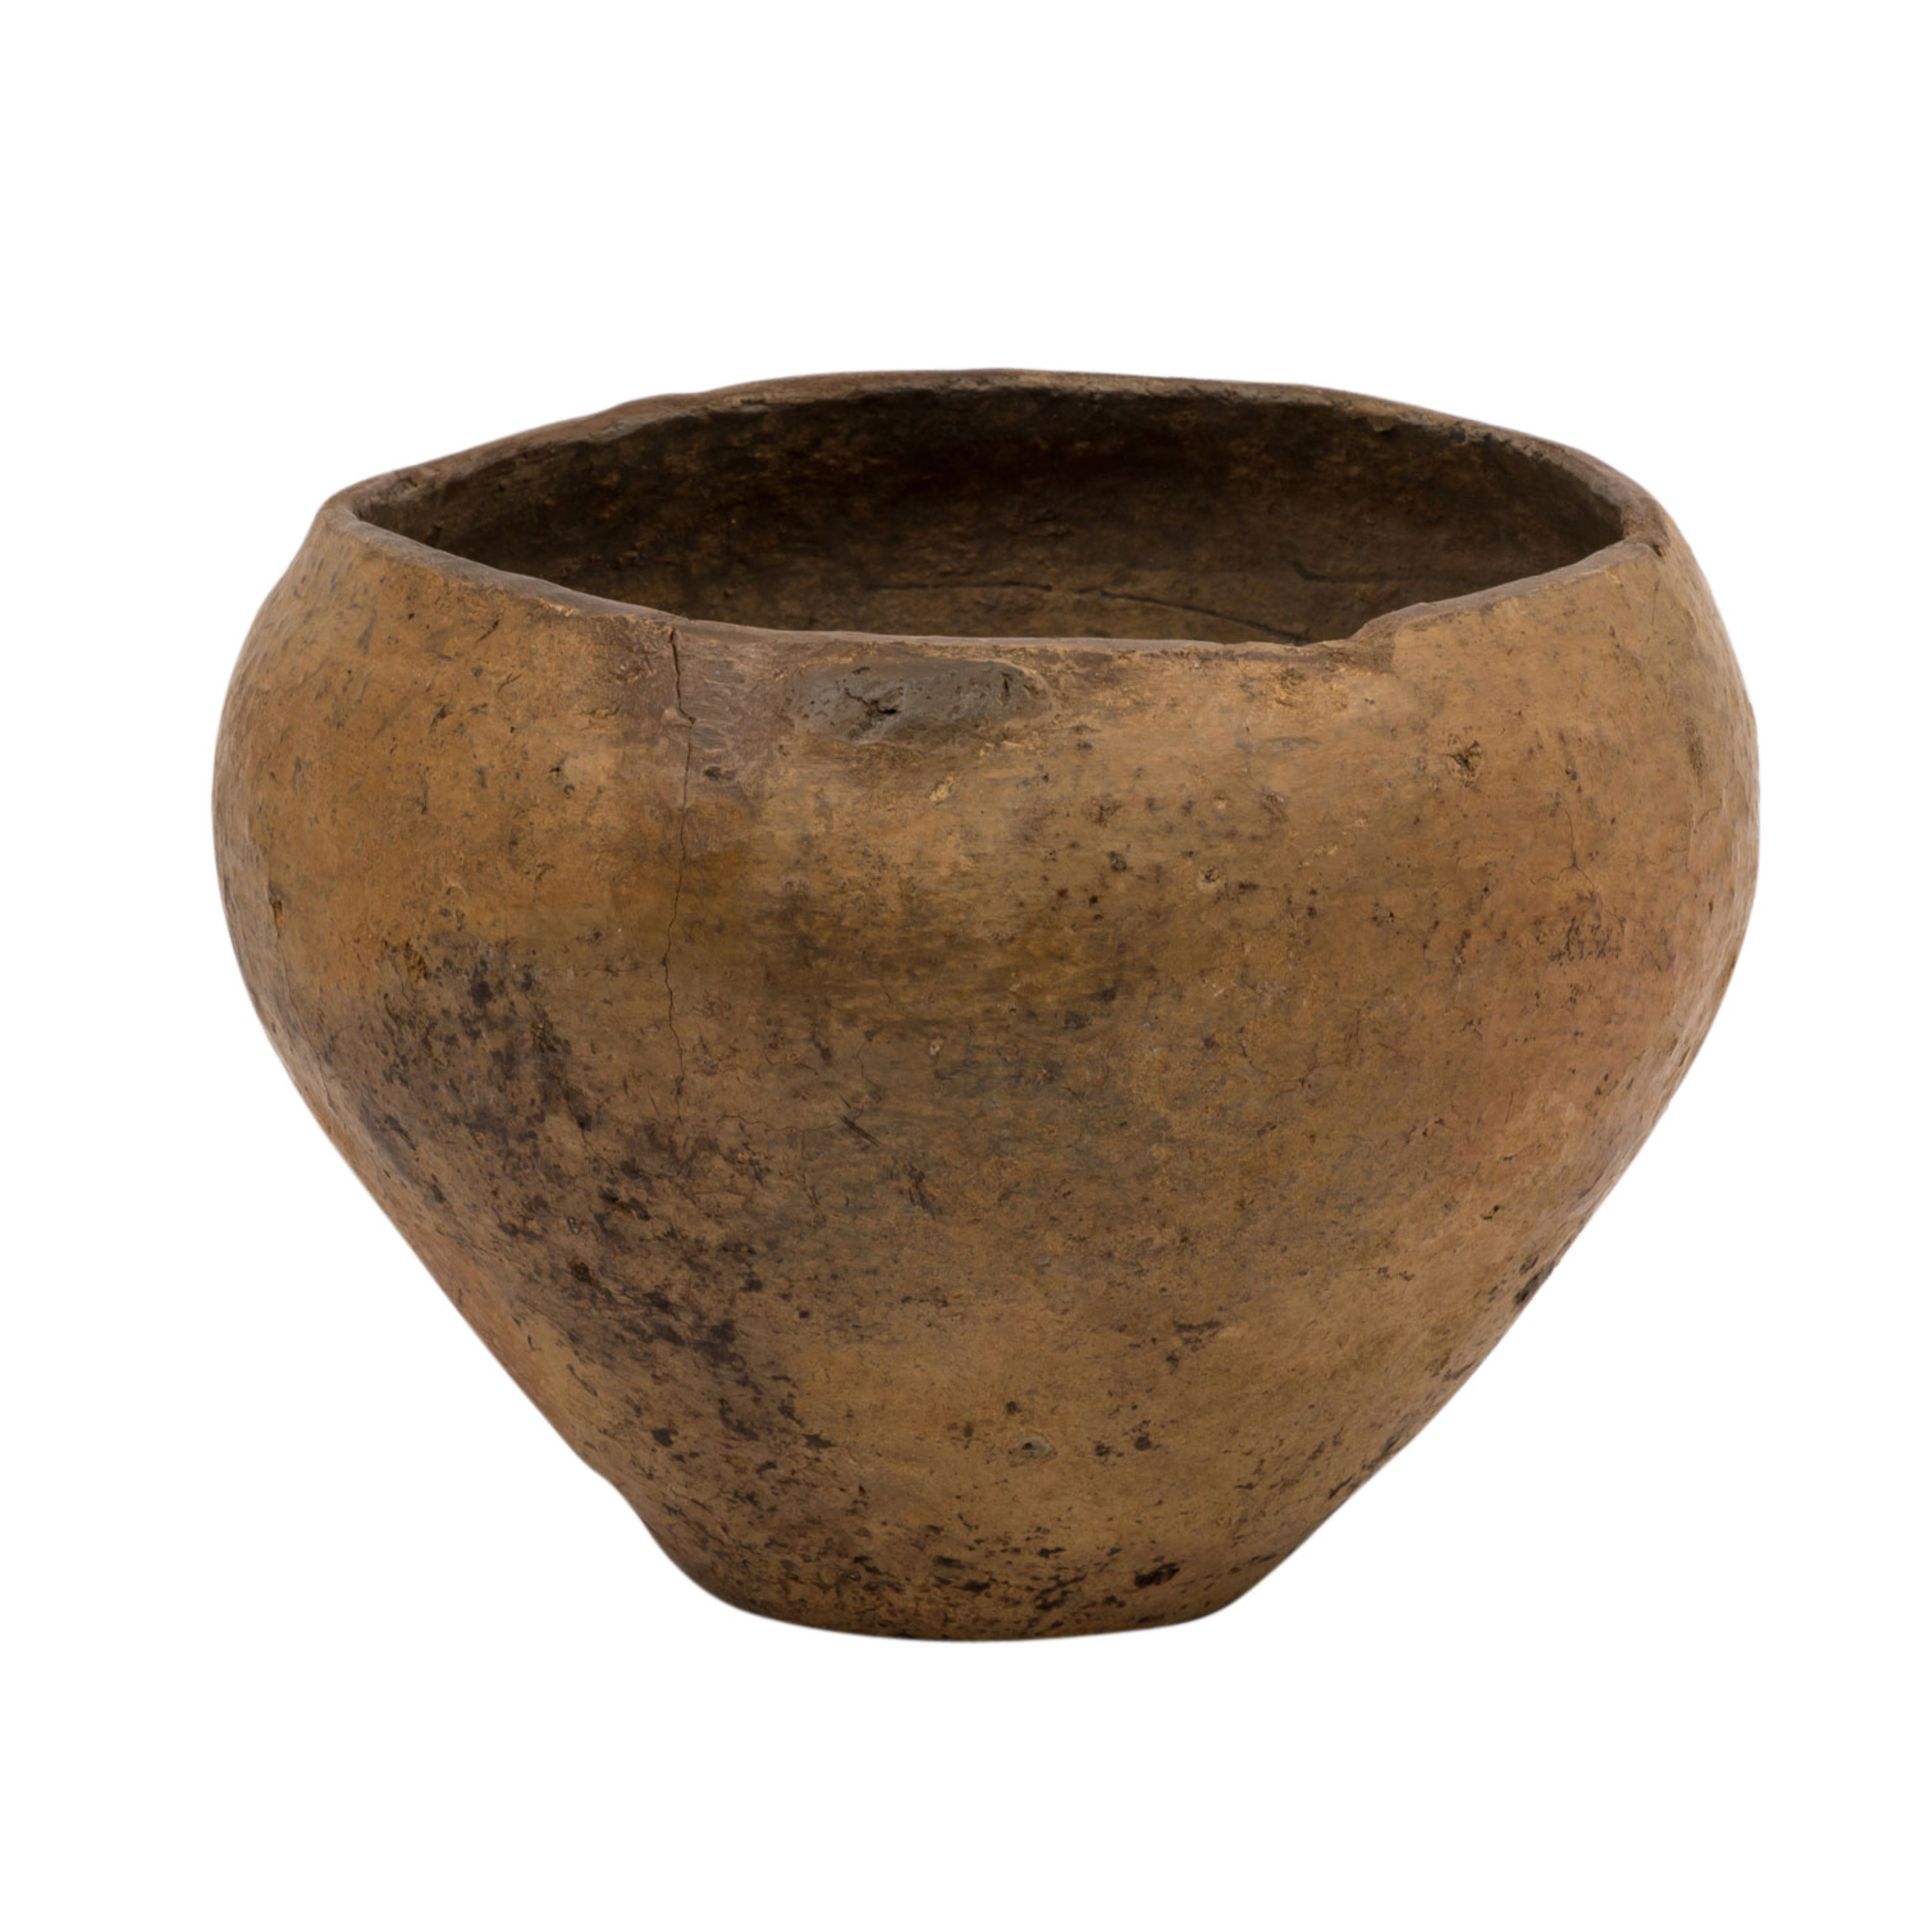 Prähistorische Keramik der Bronze-/Eisenzeit -schlichtes braunes Tongefäß, vermutli - Bild 2 aus 3